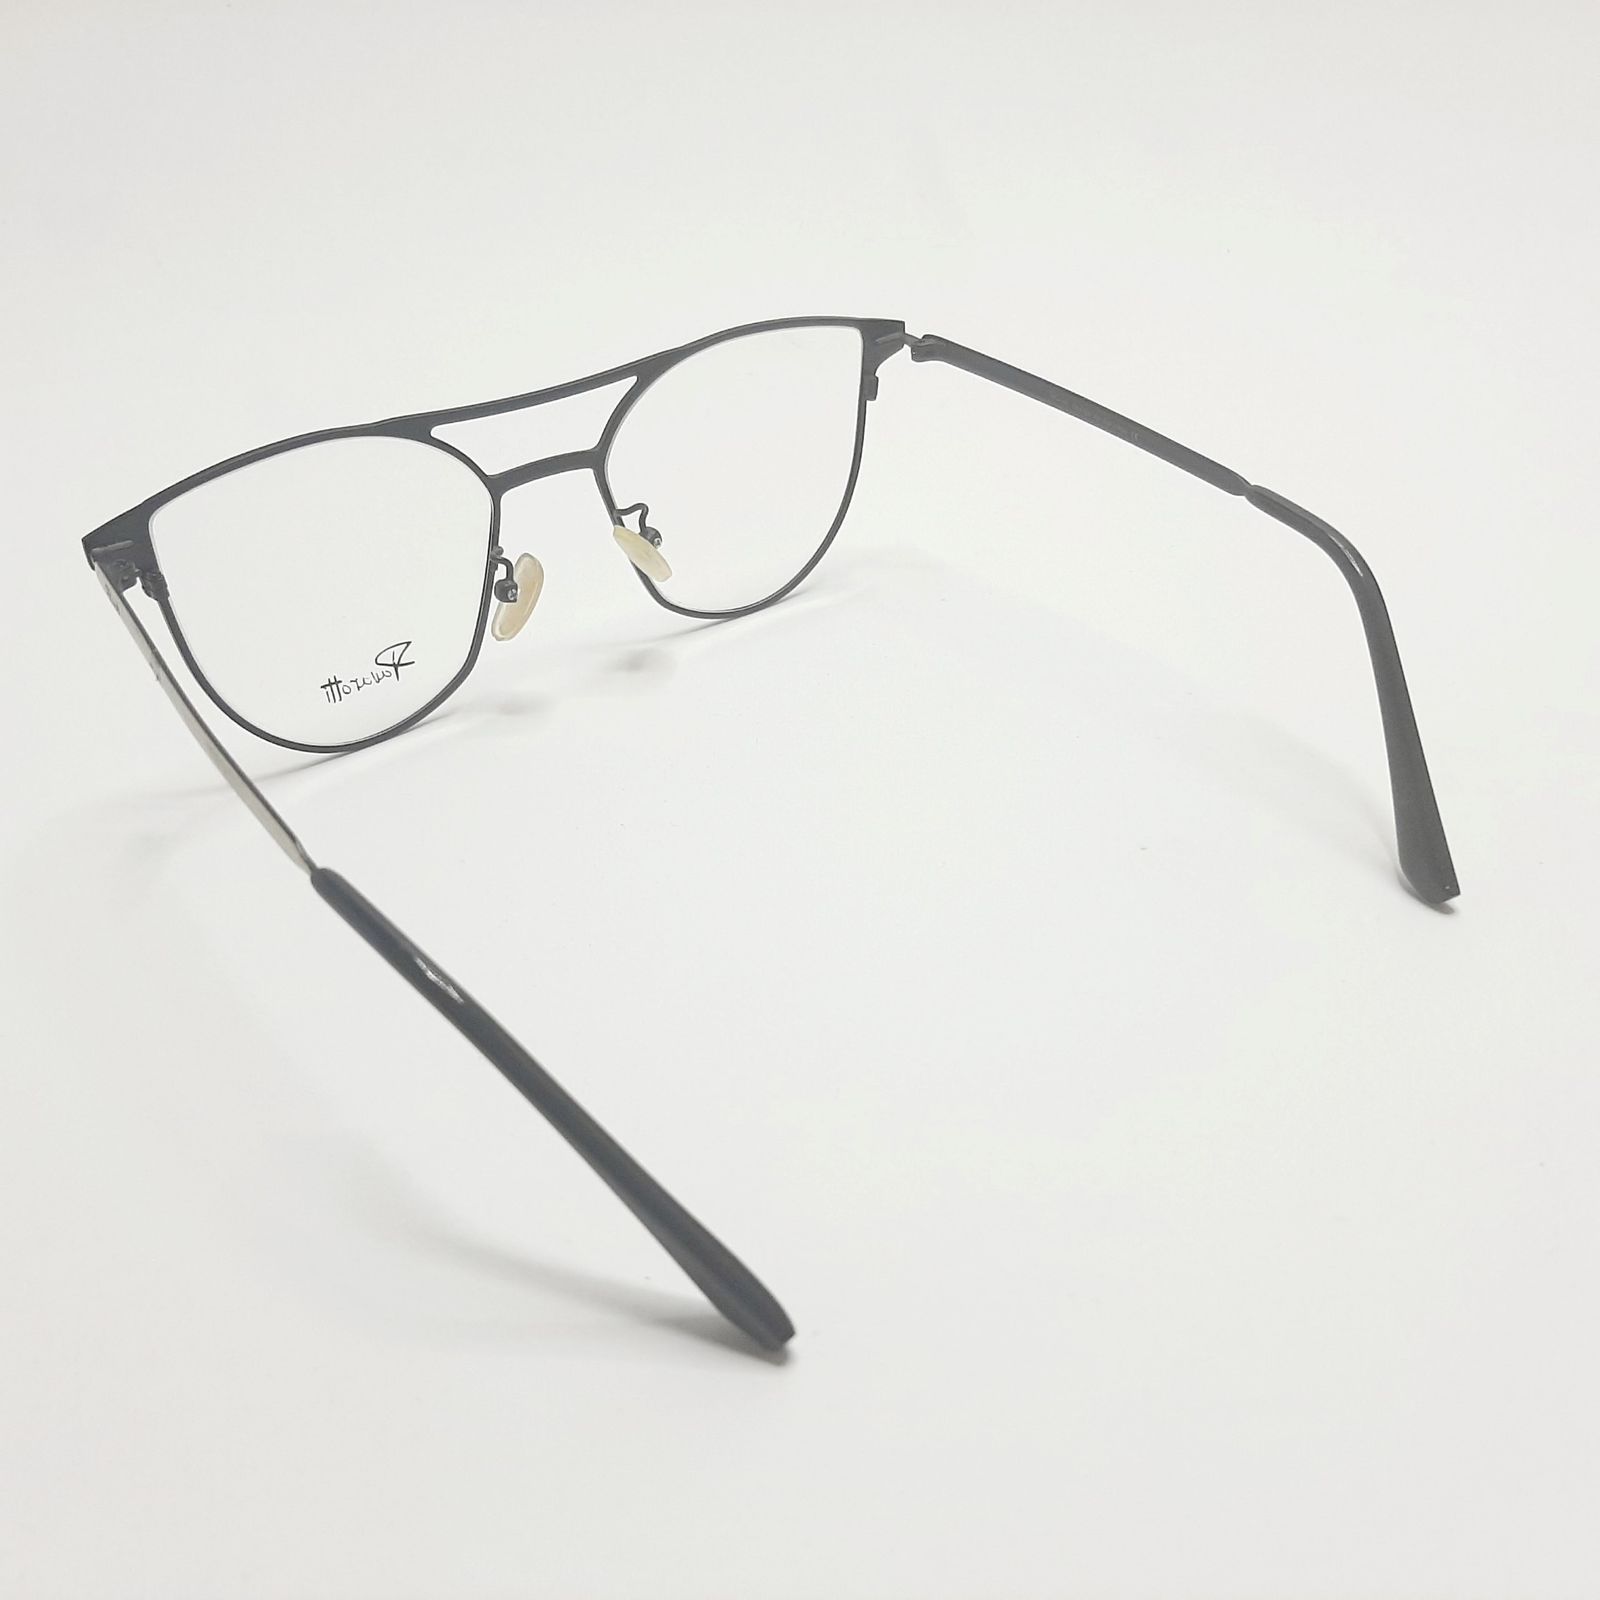 فریم عینک طبی پاواروتی مدل P82001c4 -  - 6